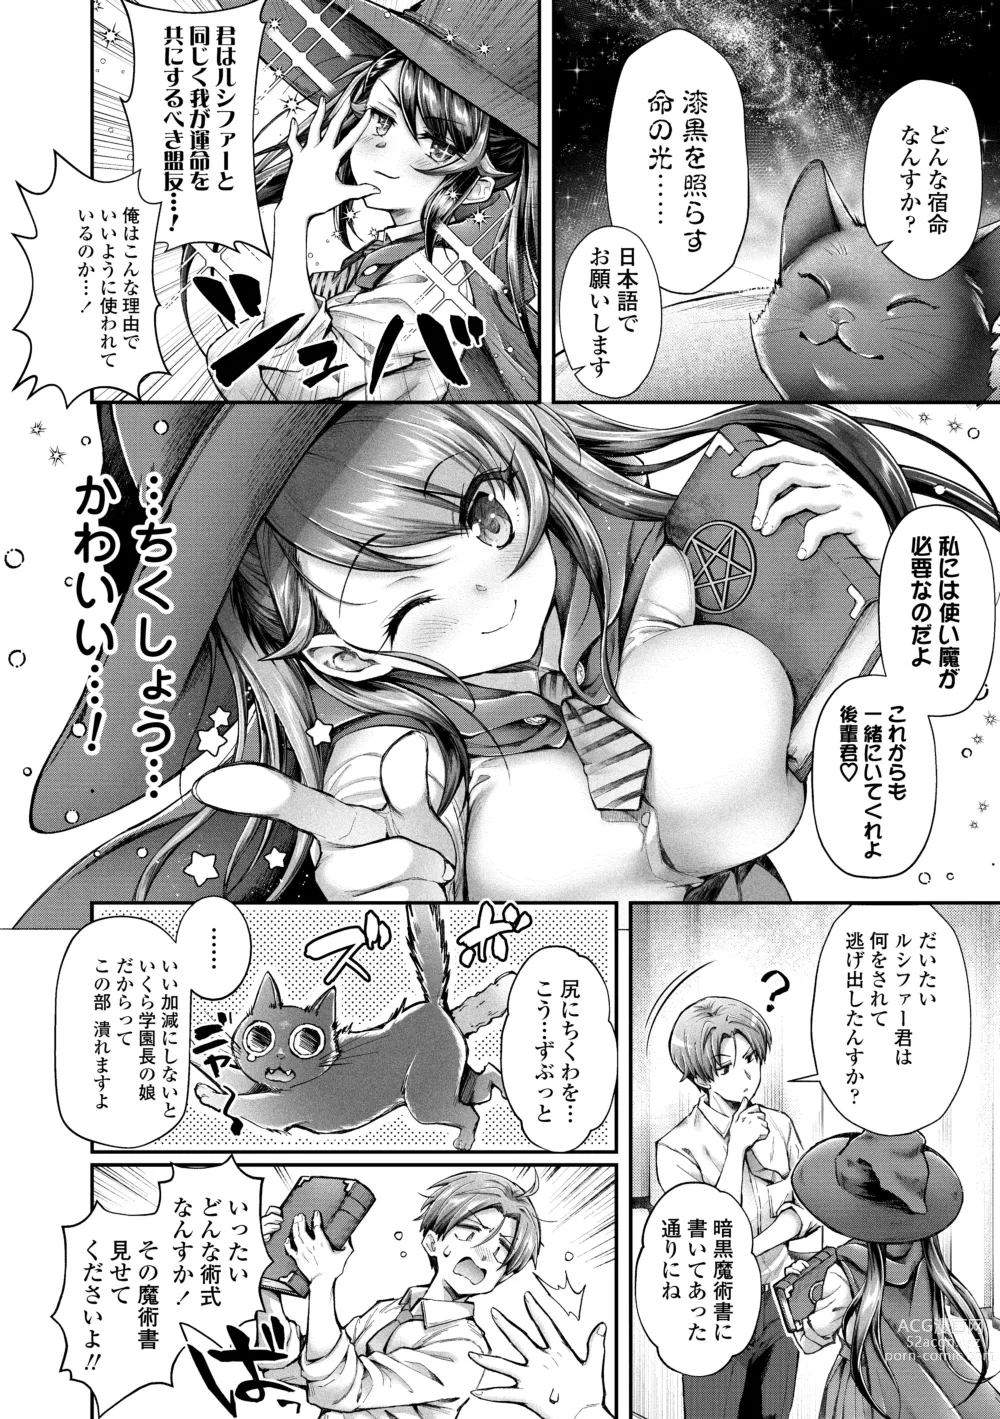 Page 6 of manga Hen na Ko demo Ii desu ka?